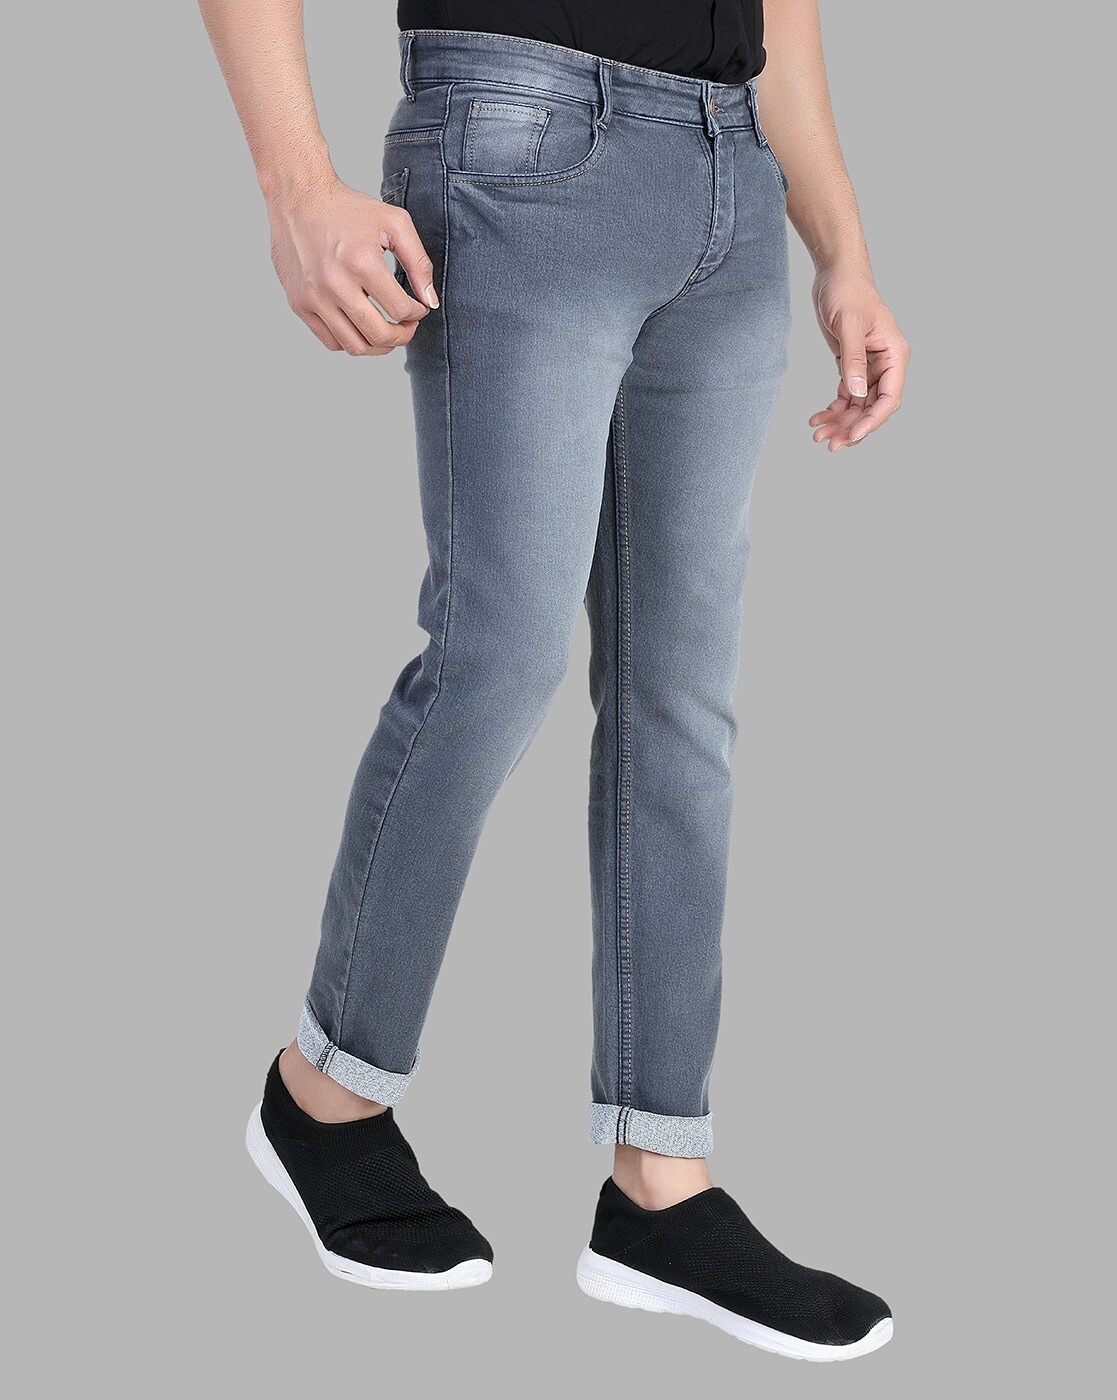 Ultrasoft Slim Yonk Fit Grey Jeans - Scott